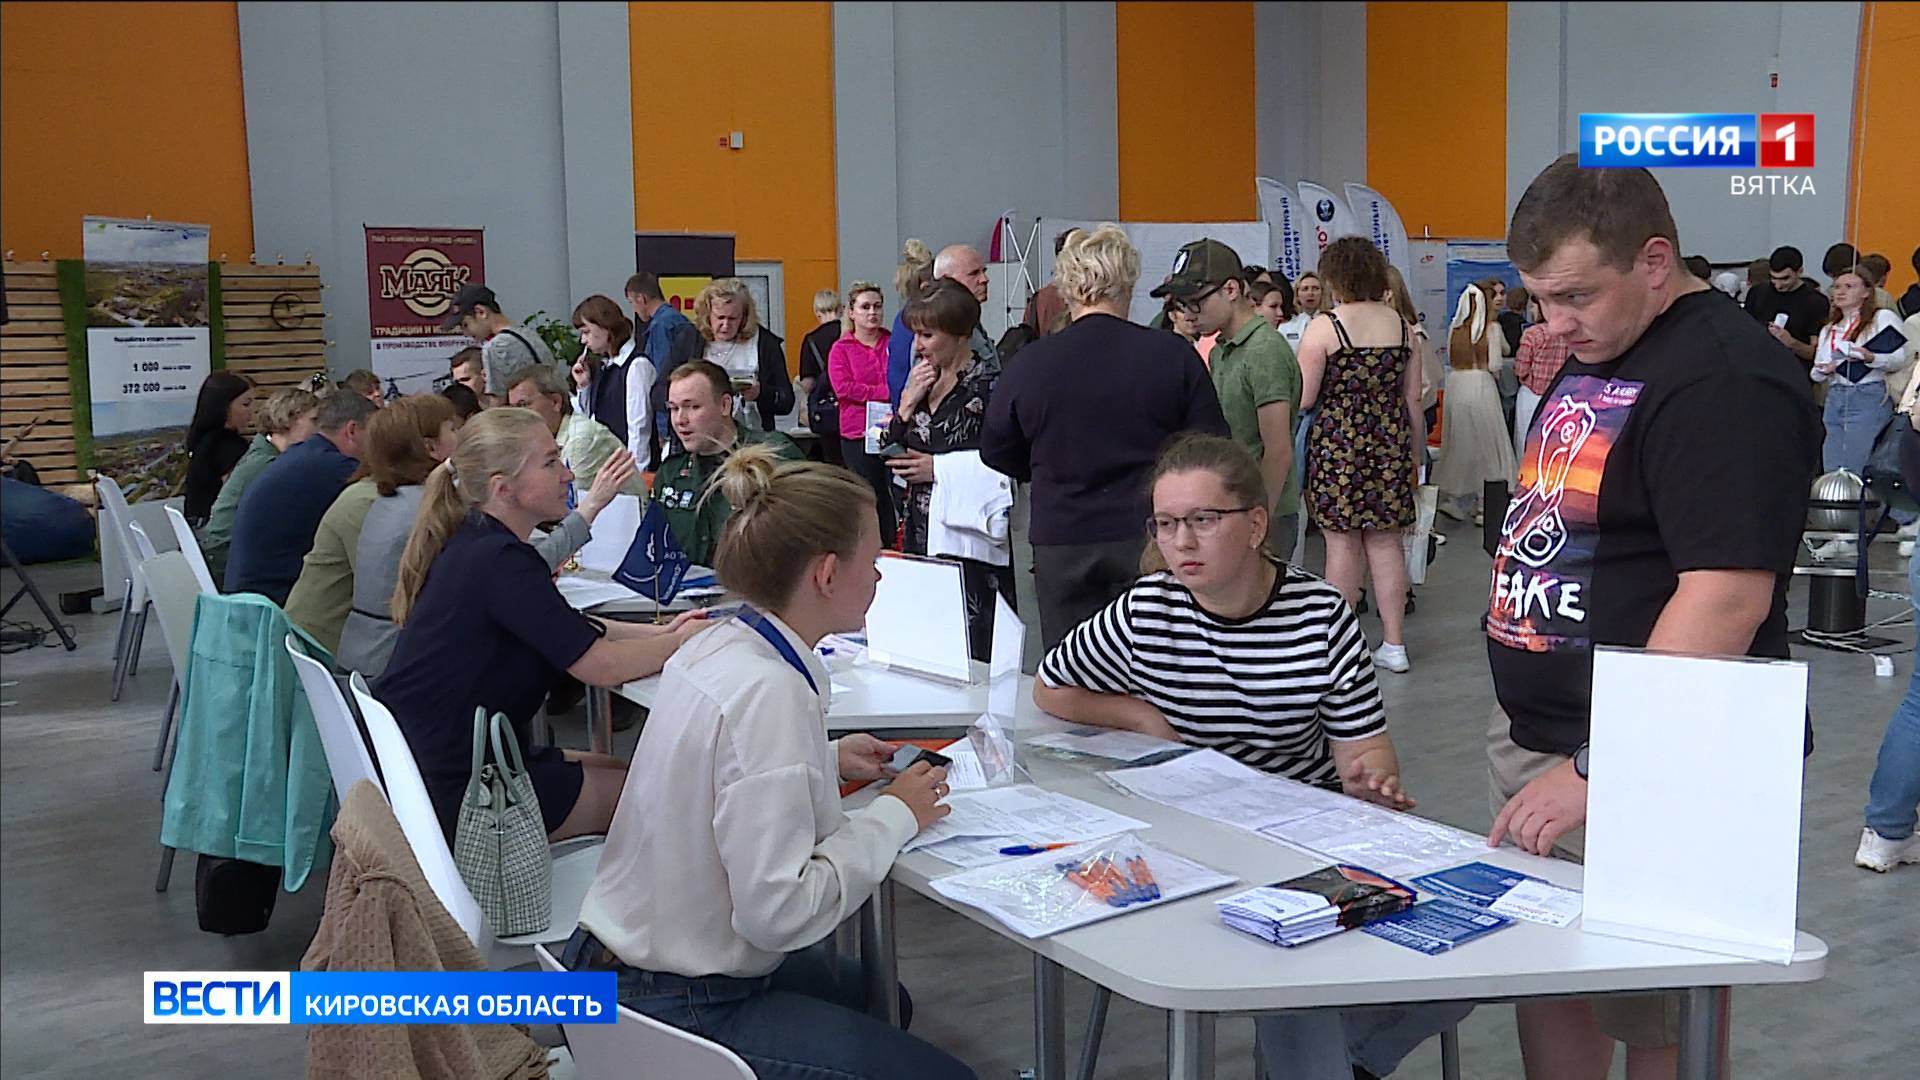 Около 6 тысяч жителей Кировской области приняли участие во Всероссийской ярмарке трудоустройства